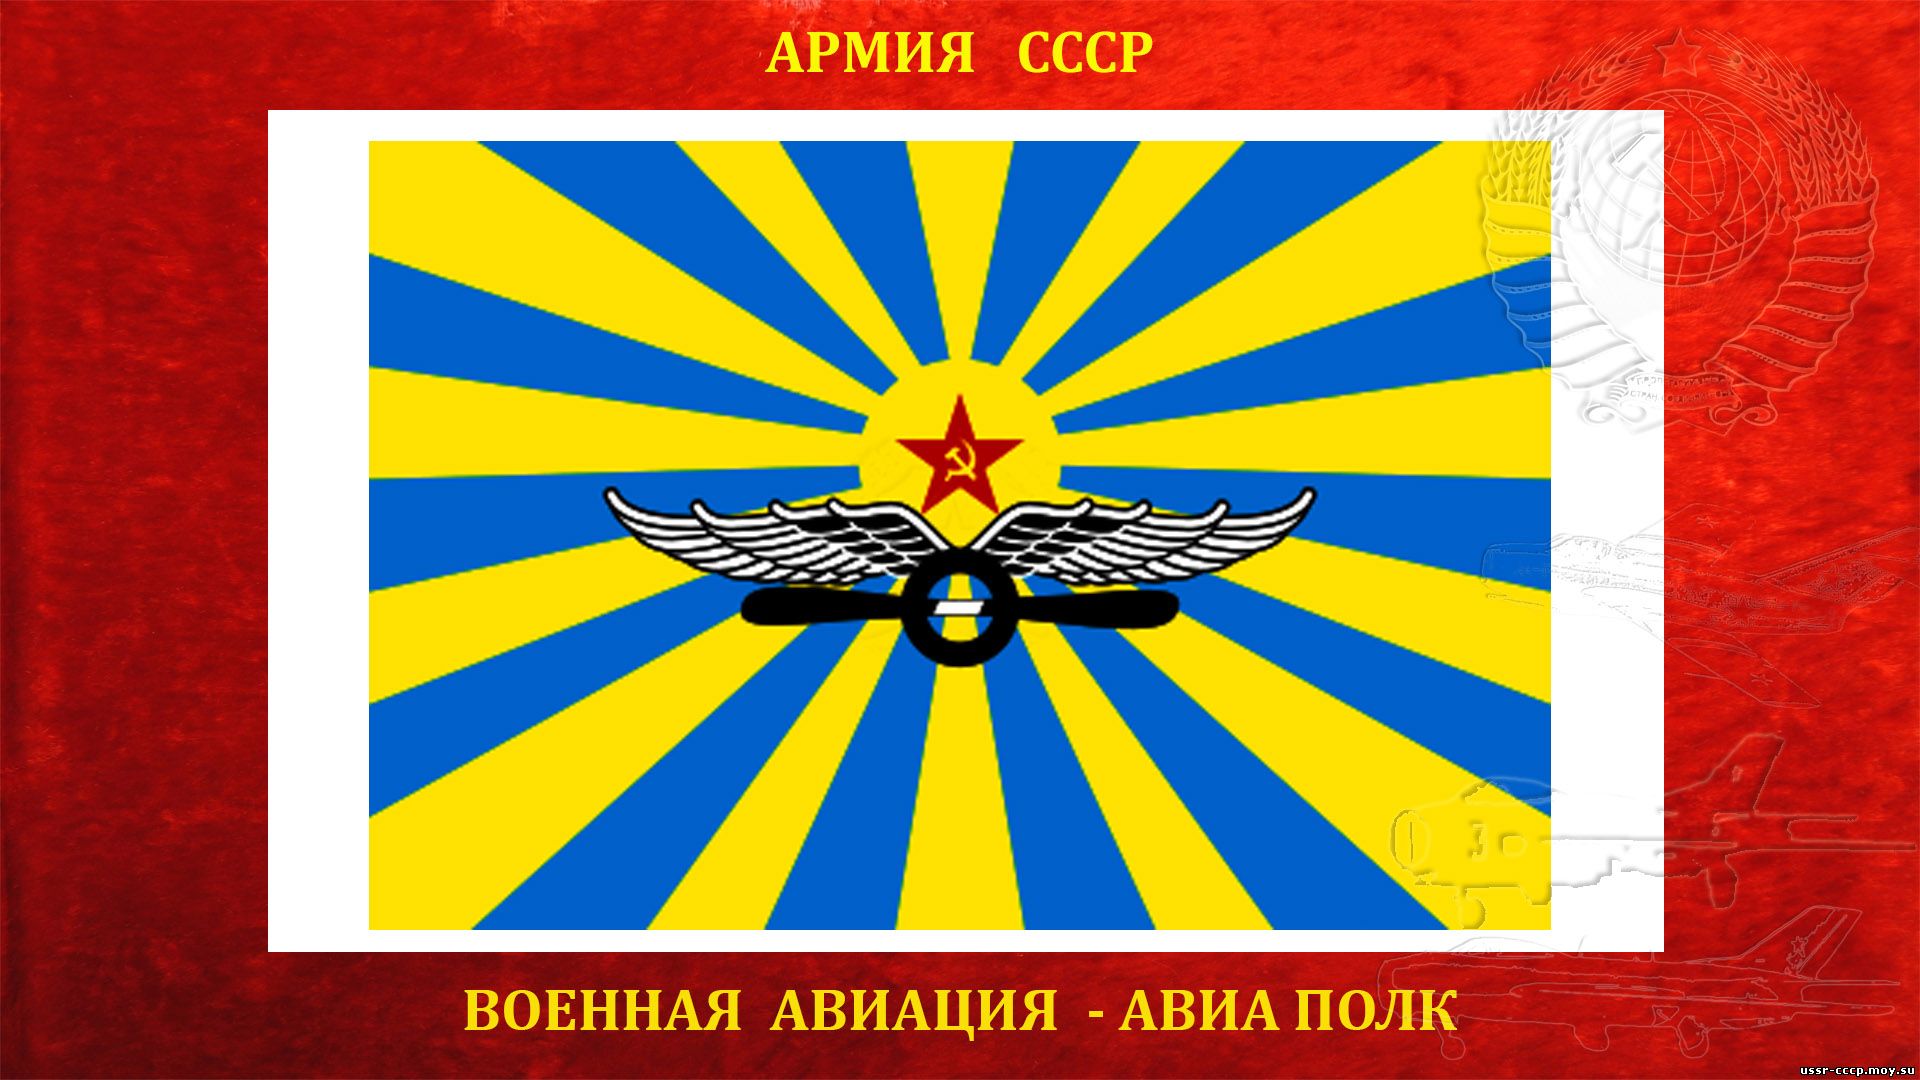 33-й истребительный авиационный полк ПВО СССР (полное повествование)